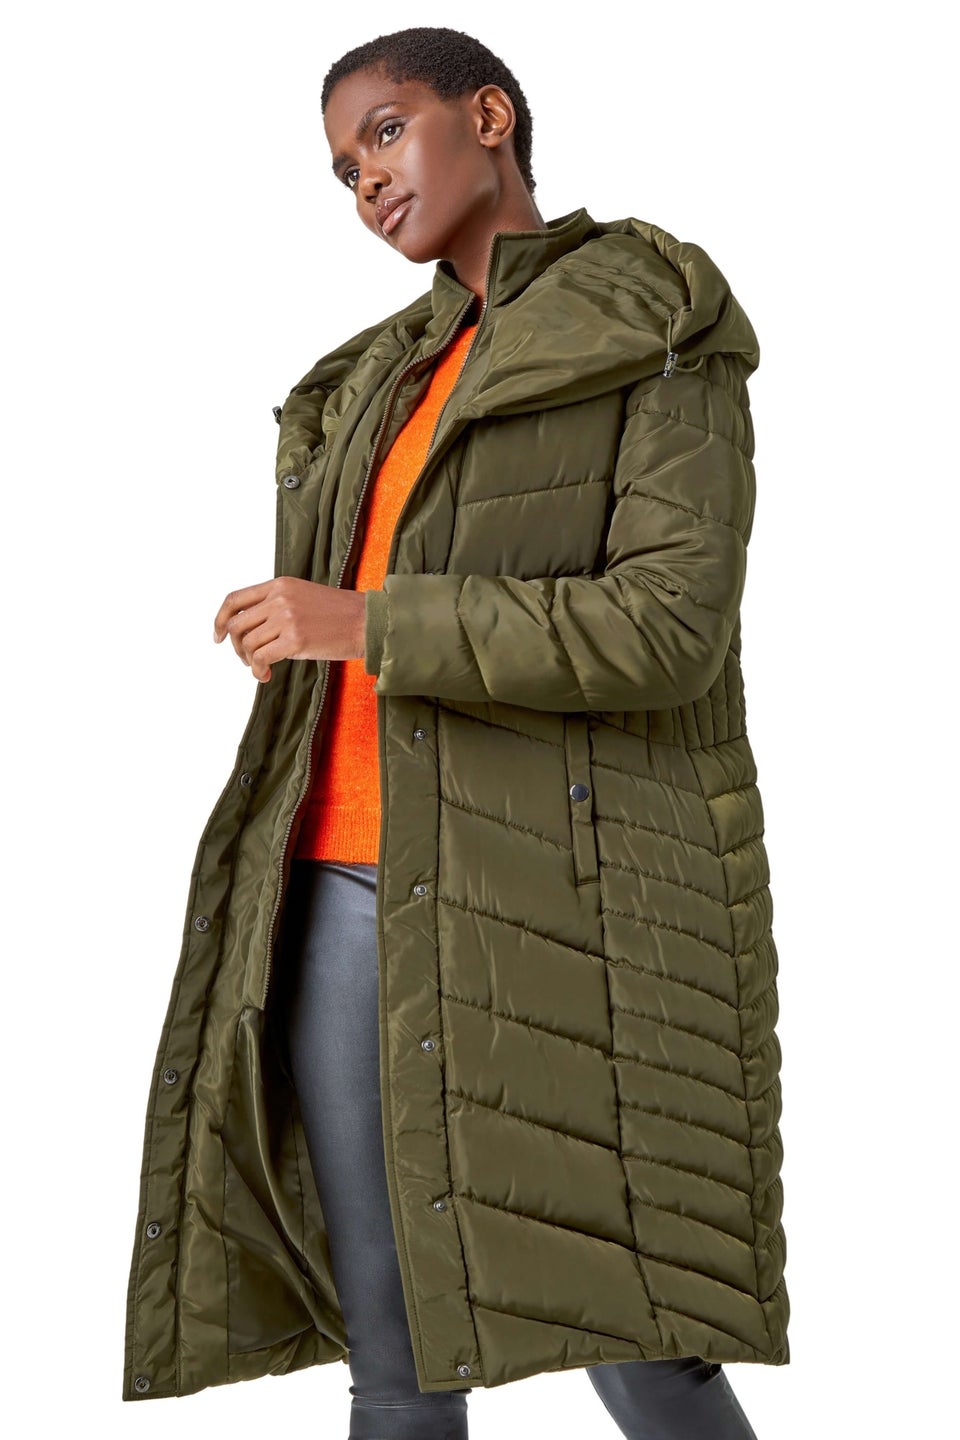 Стеганое длинное пальто с капюшоном цвета хаки Roman Khaki женский джинсовый тренч с капюшоном уличное весенне осеннее пальто средней длины в взрывобезопасном стиле ветровка со строчкой в стиле ре